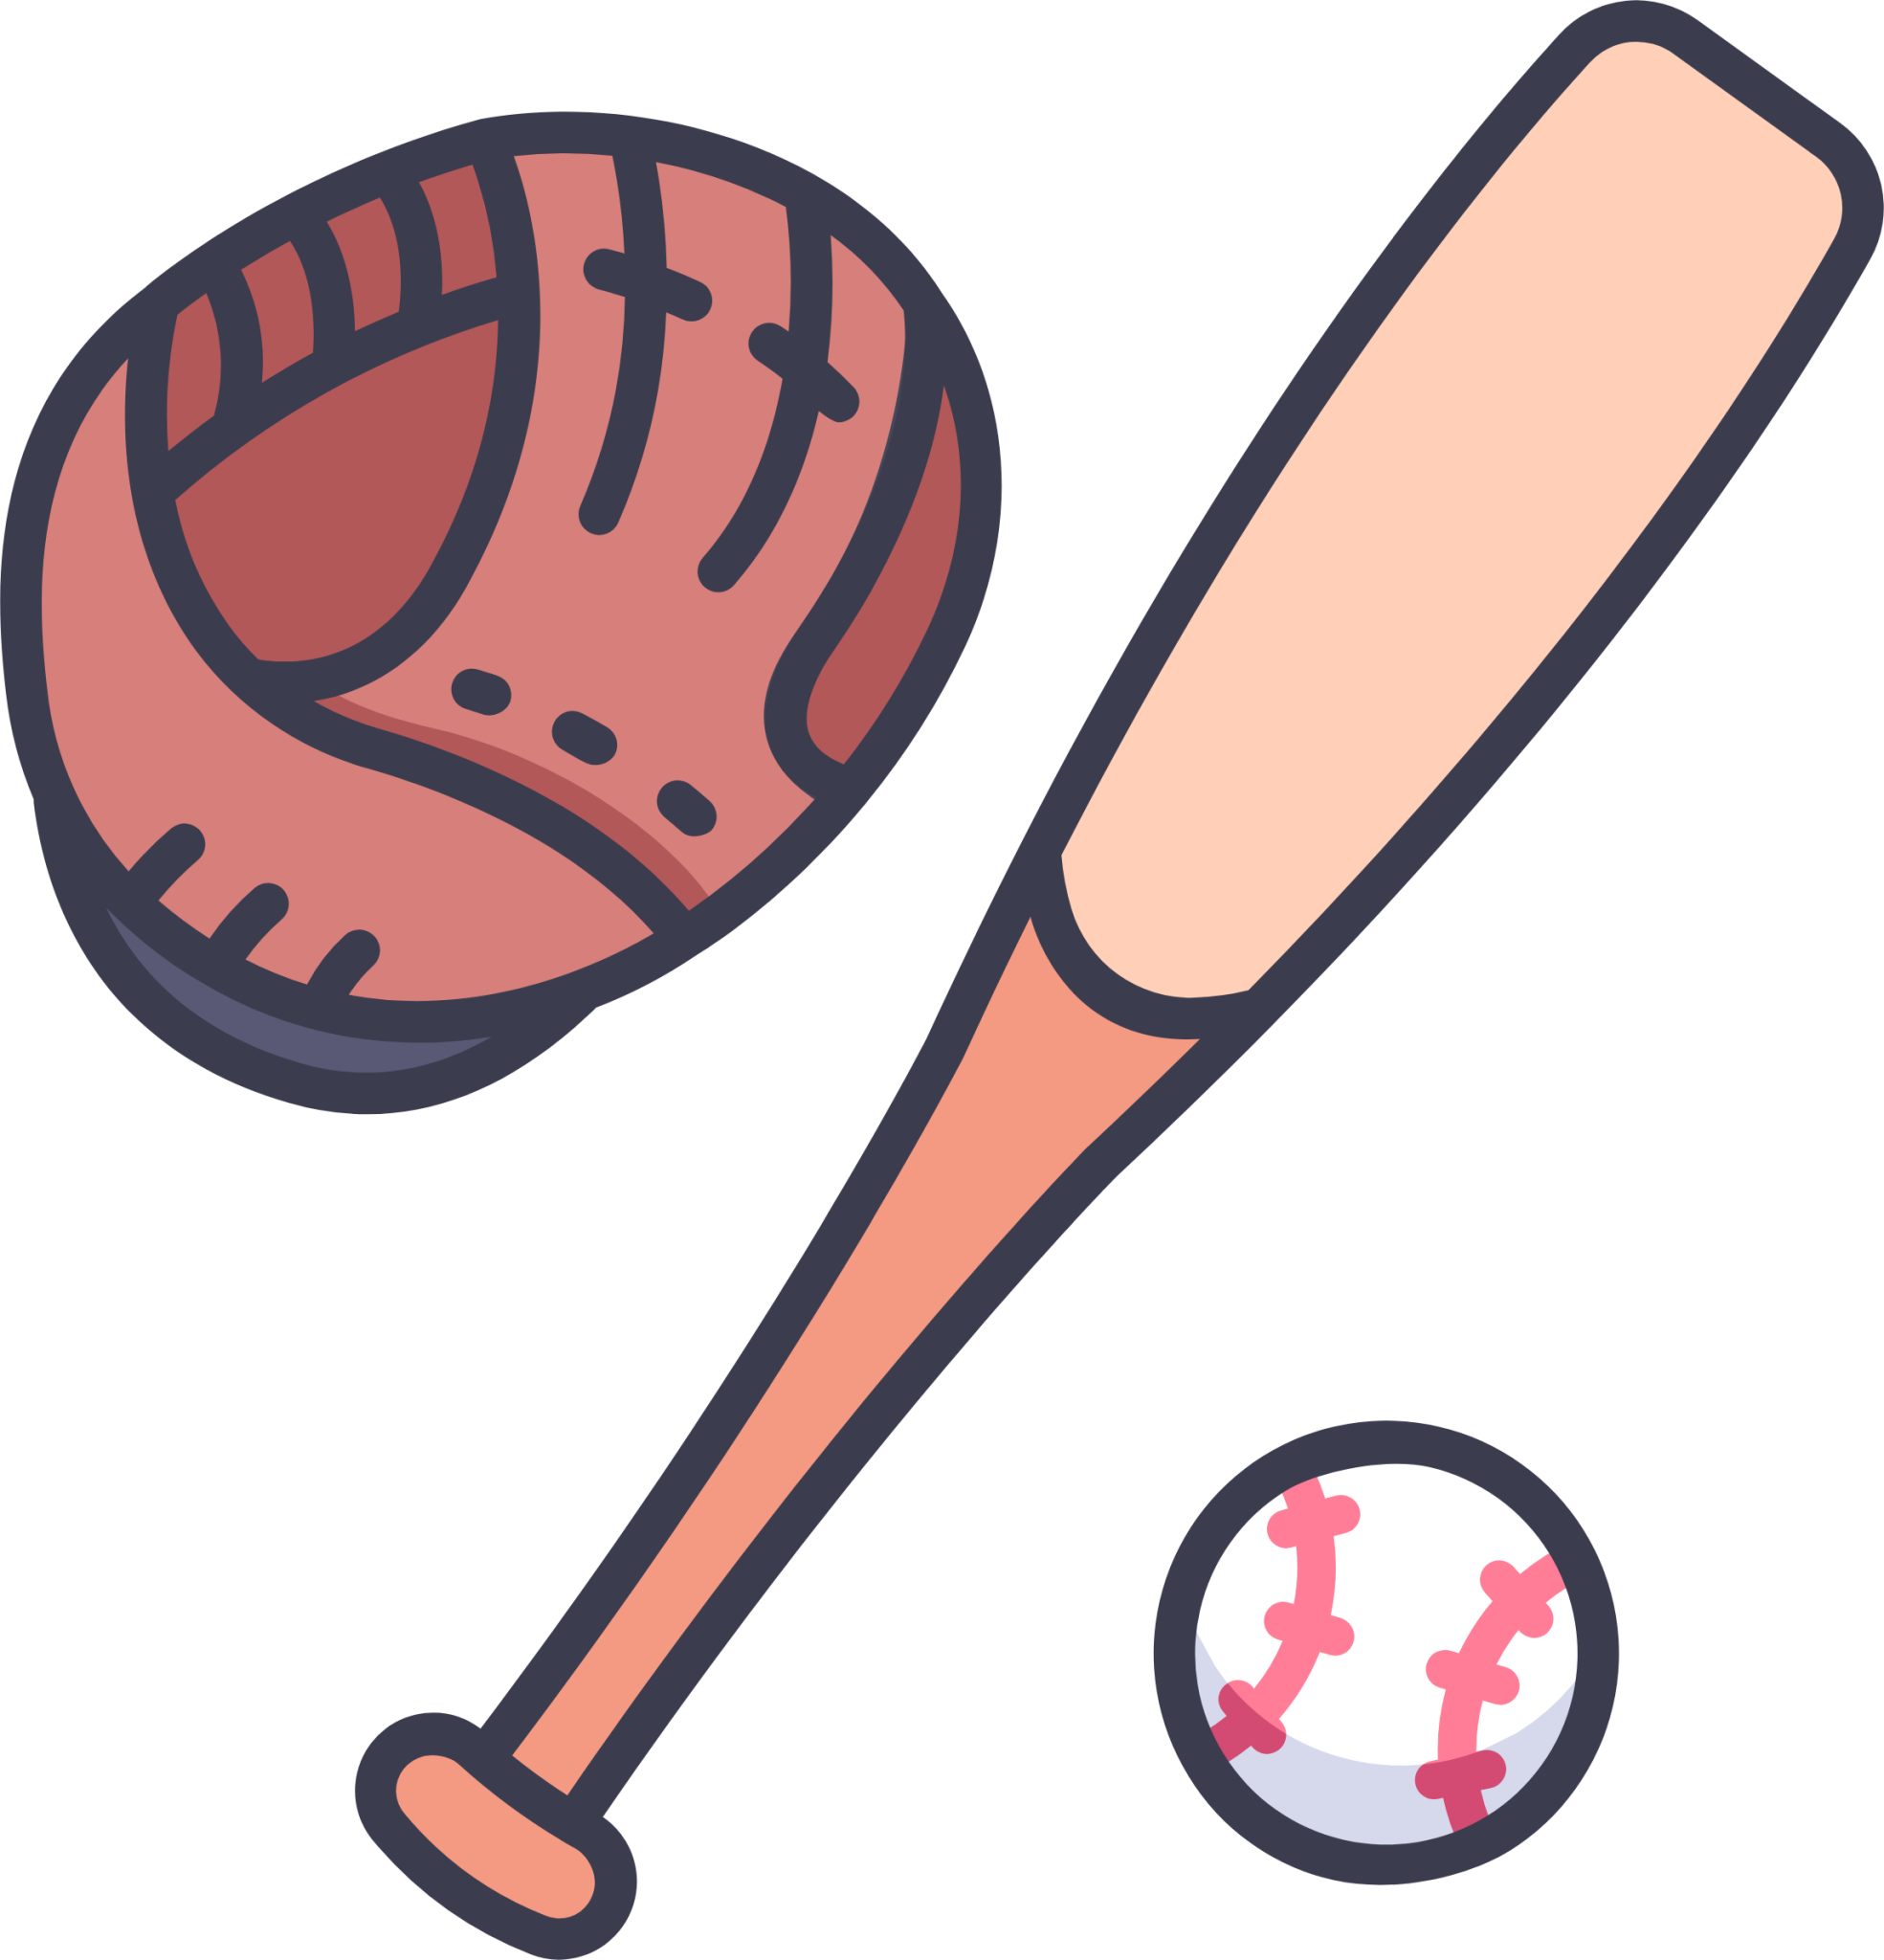 baseball glove icon